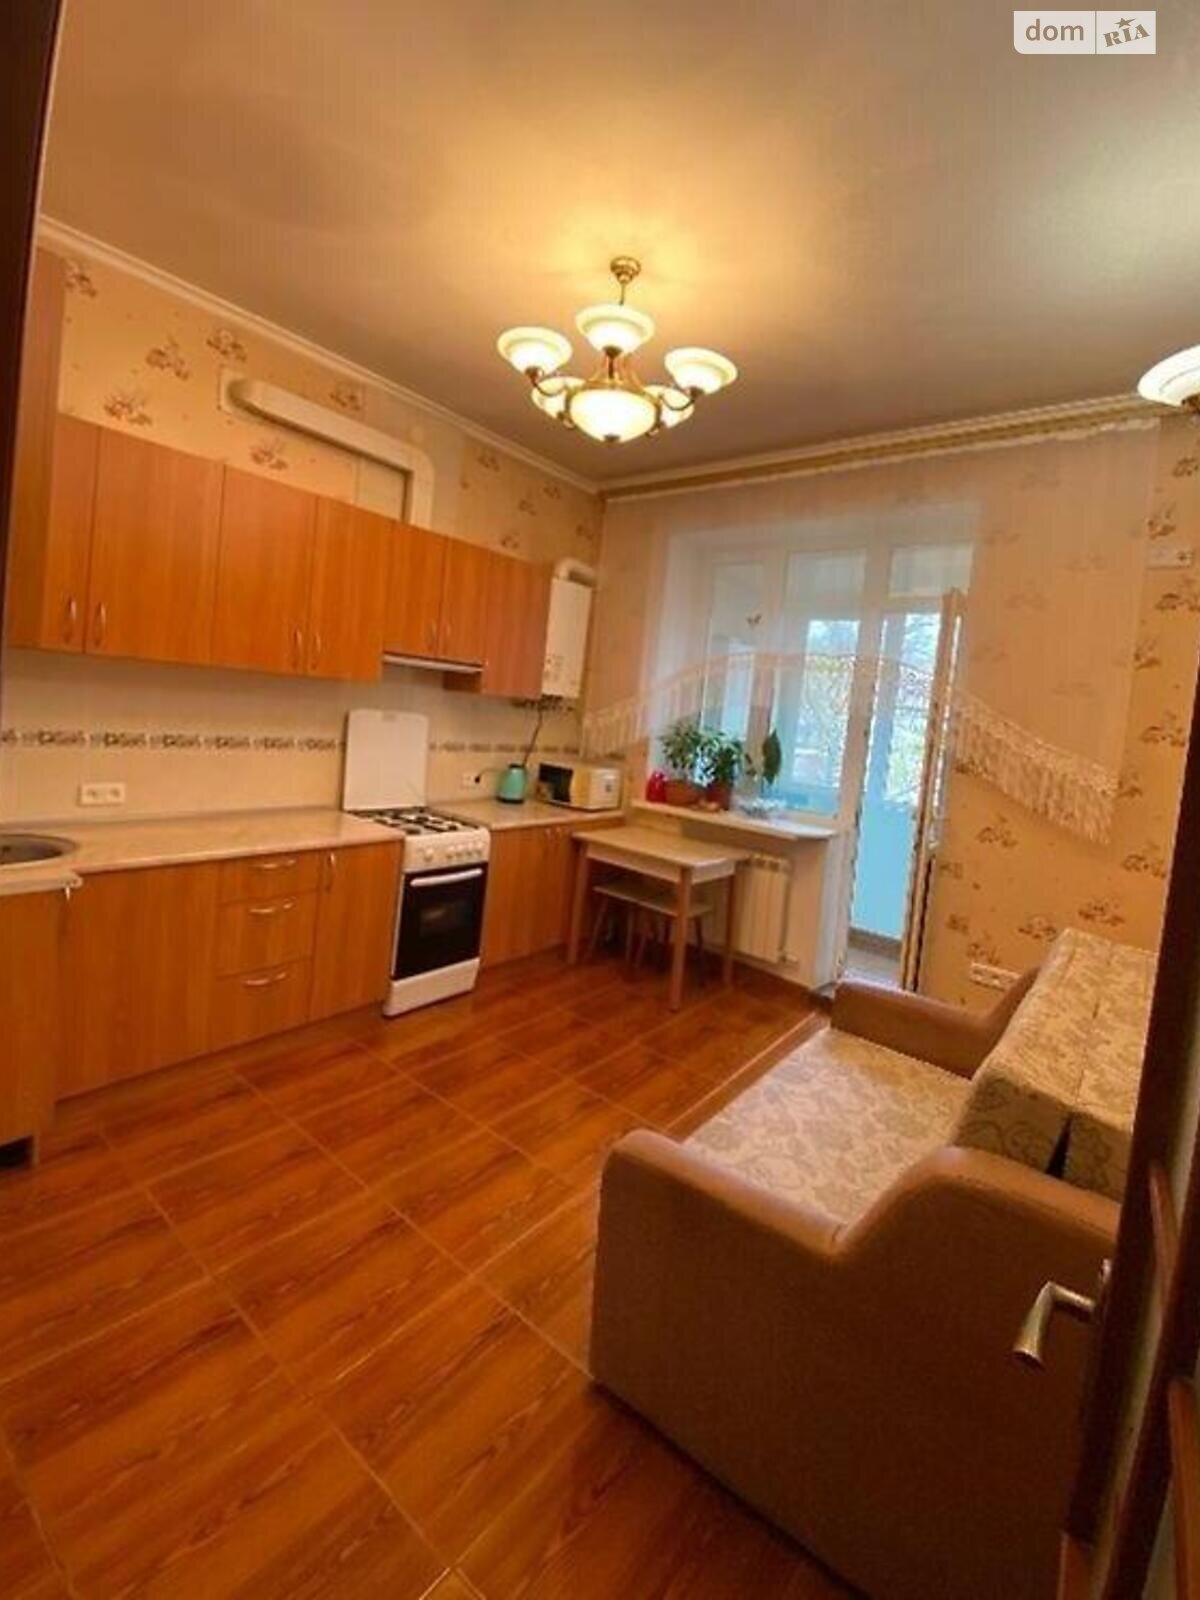 Продажа однокомнатной квартиры в Одессе, на ул. Лузановская 104, район Лузановка фото 1